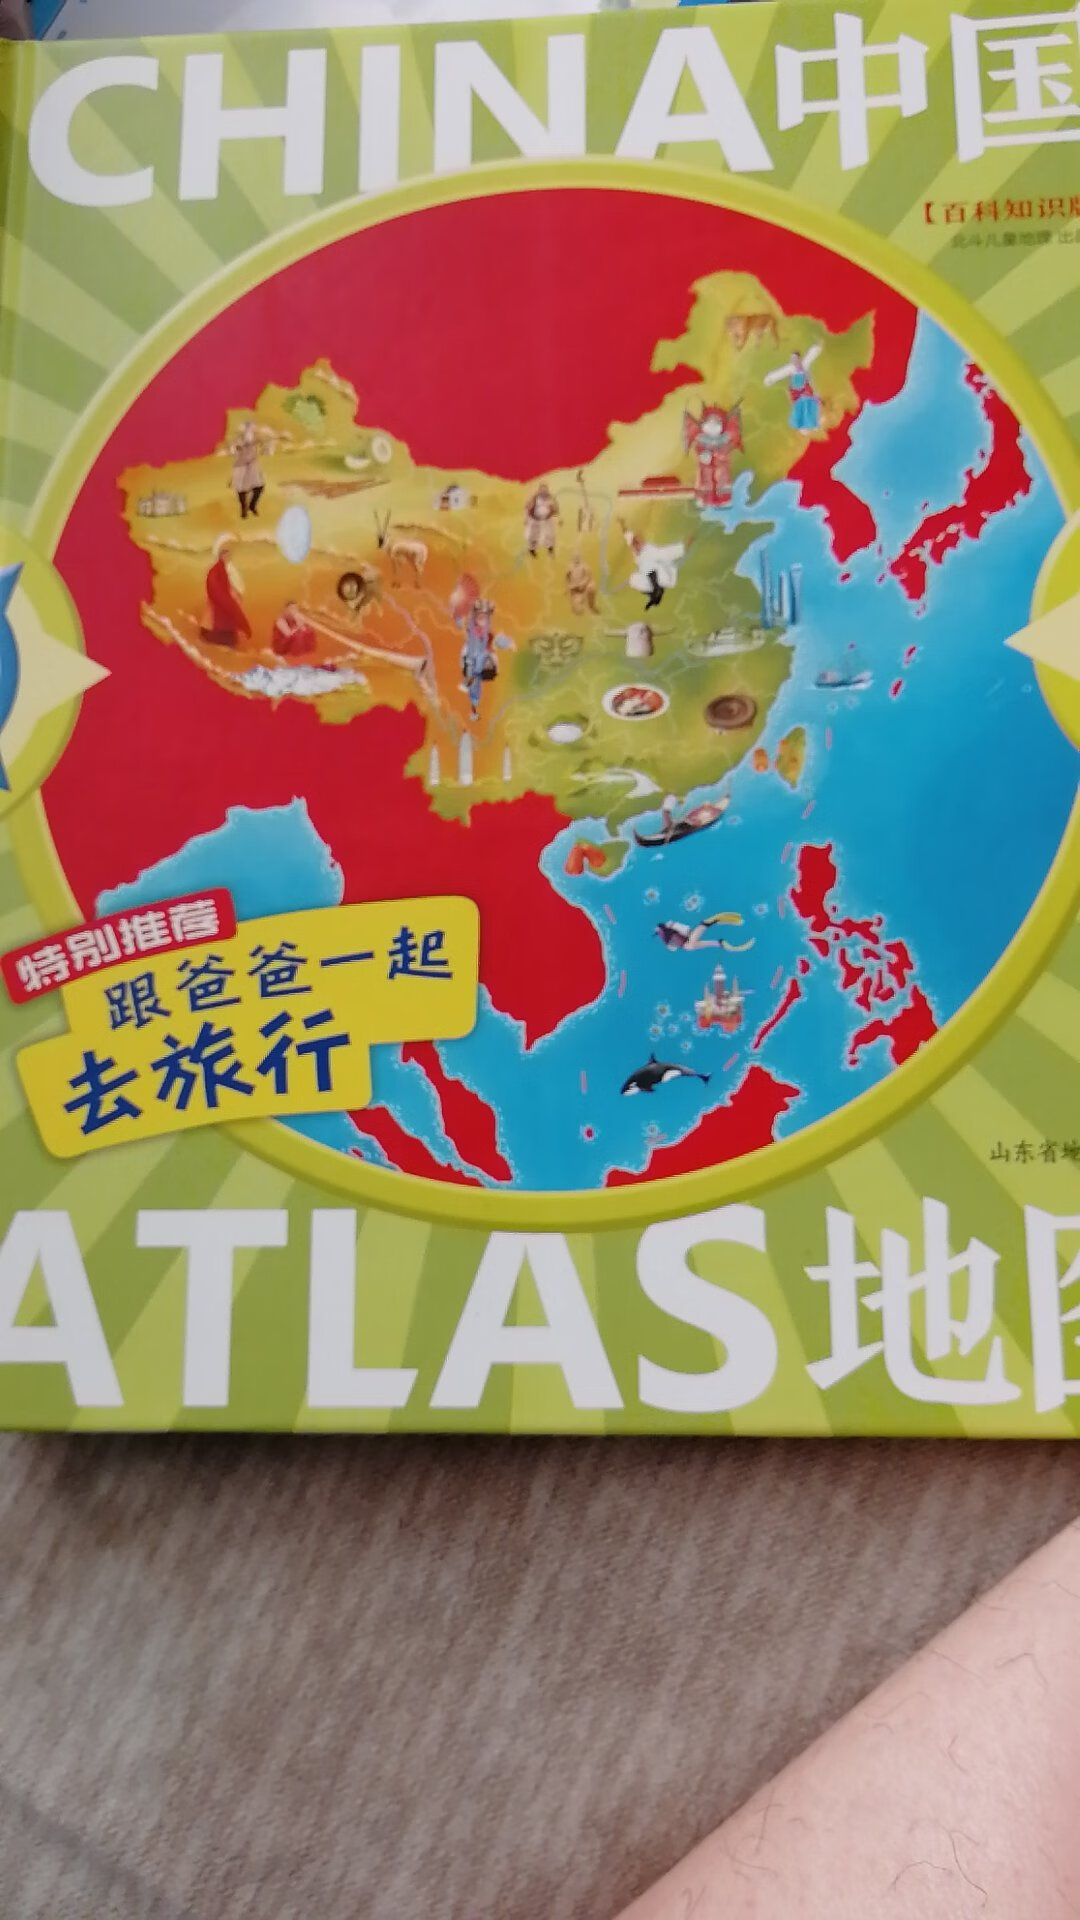 有空就给小朋友读读，让他了解中国